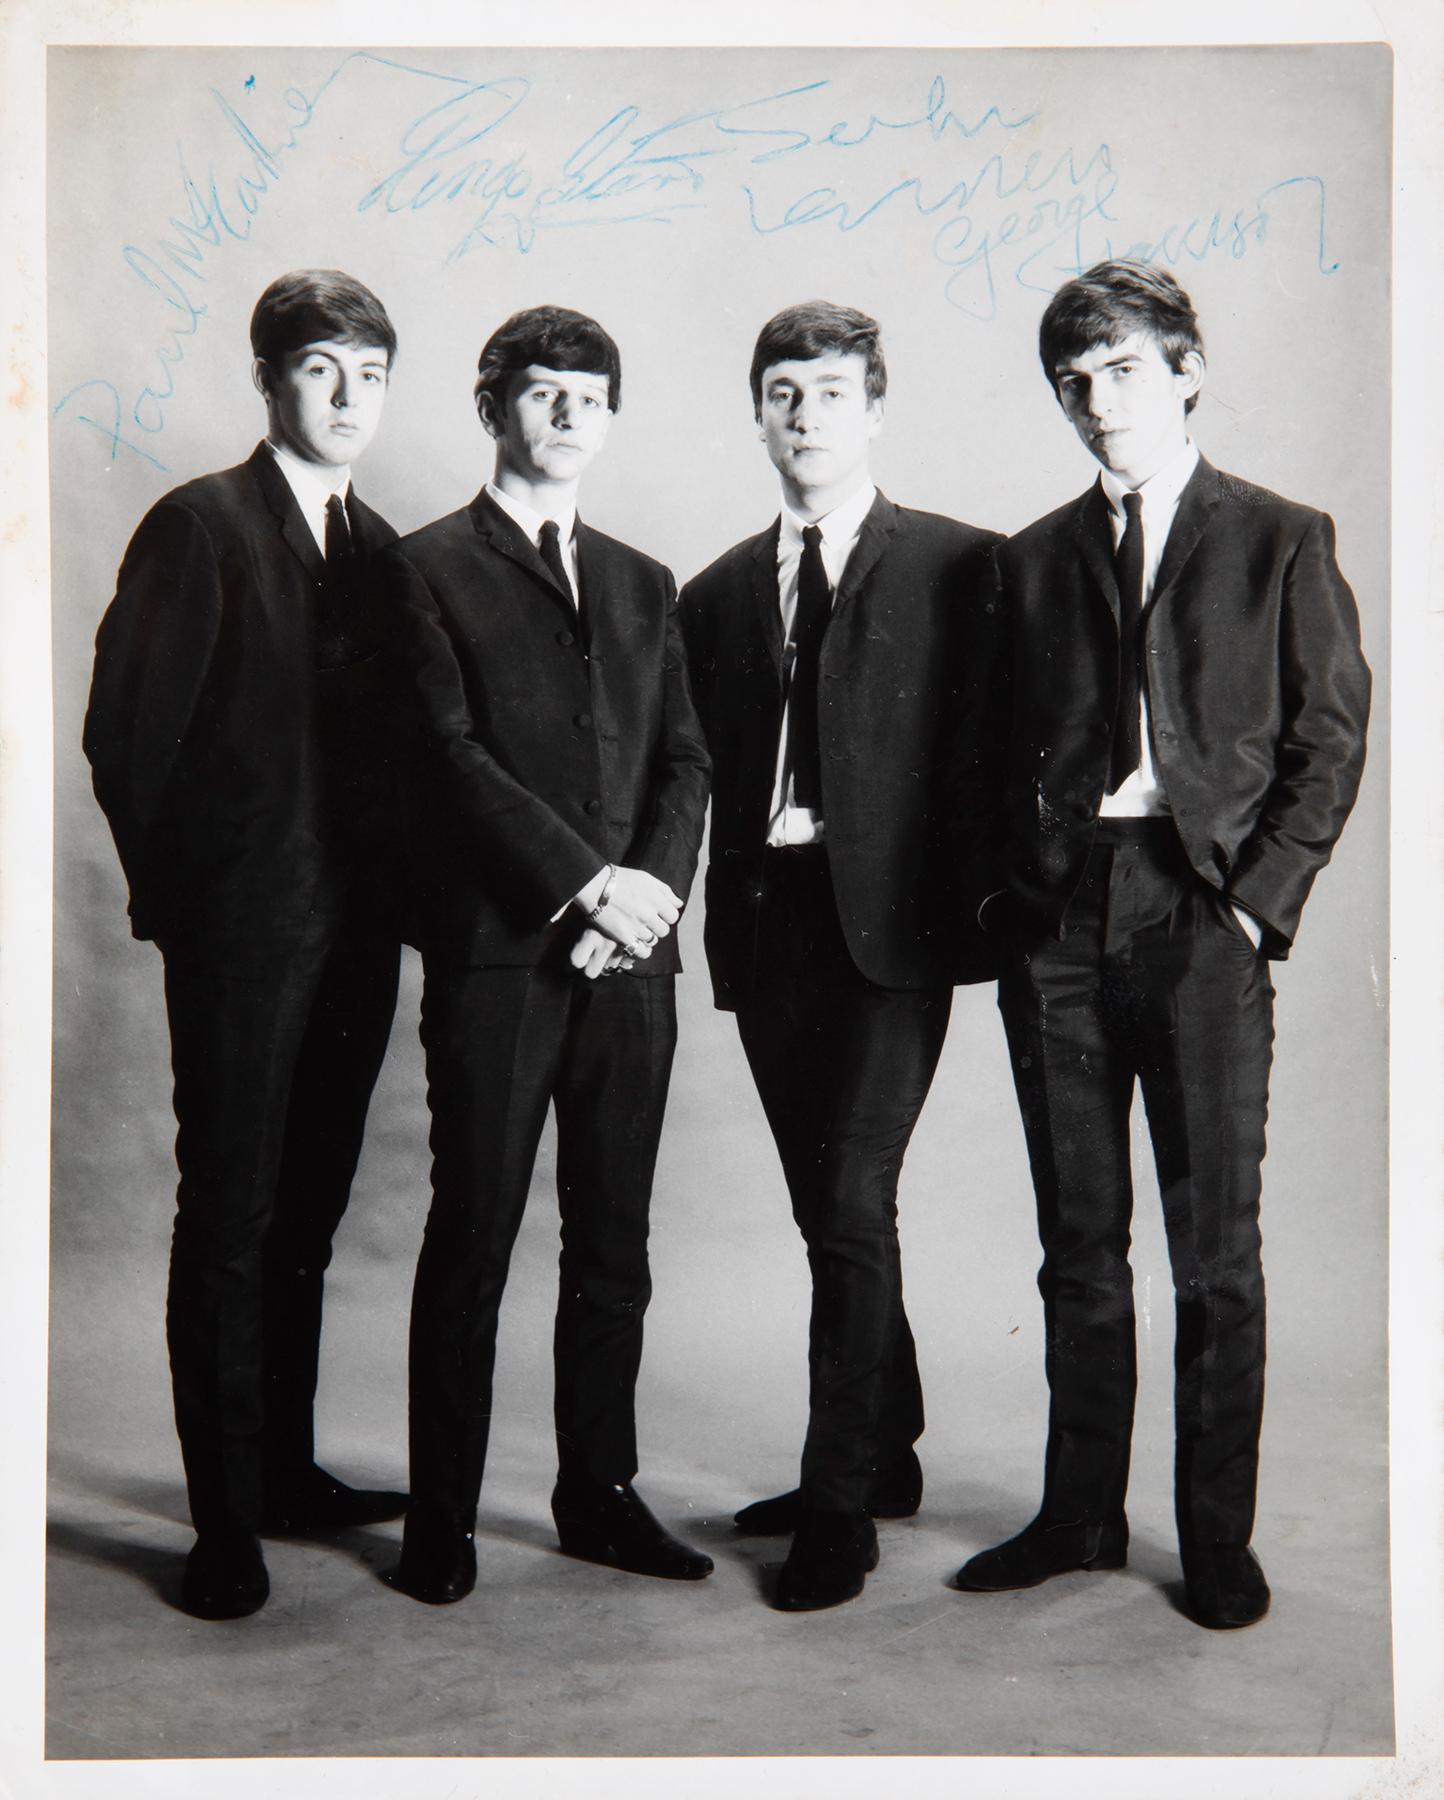 Paul McCartney s handwritten Hey Jude lyrics net 910 000 as item tops all bids at huge Beatles auction